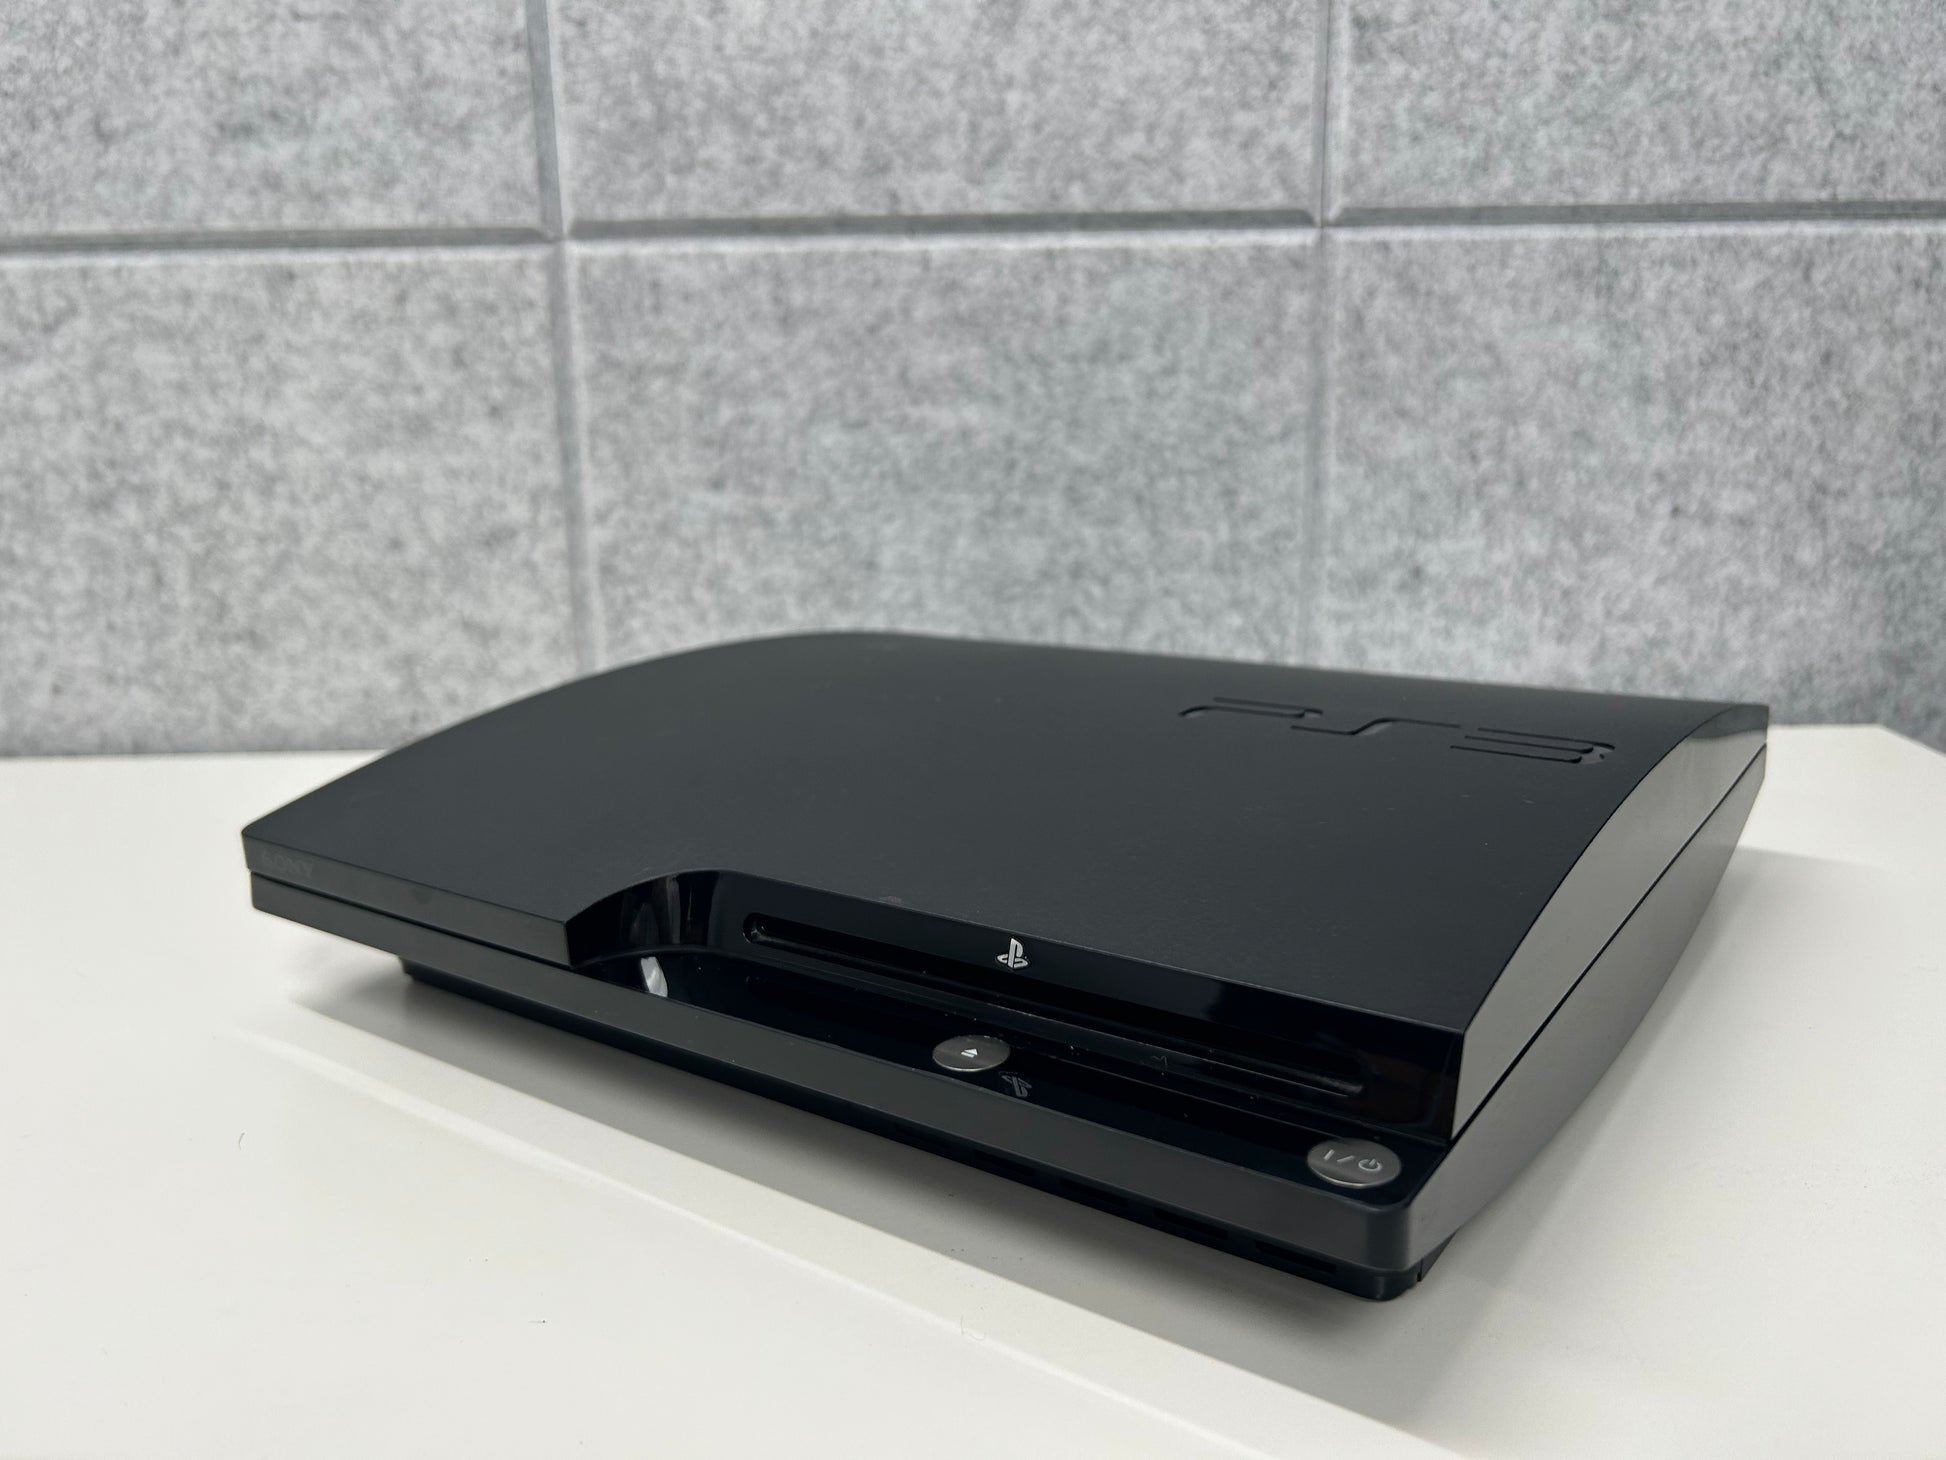 PlayStation 3 Slim 120GB (Old Model)